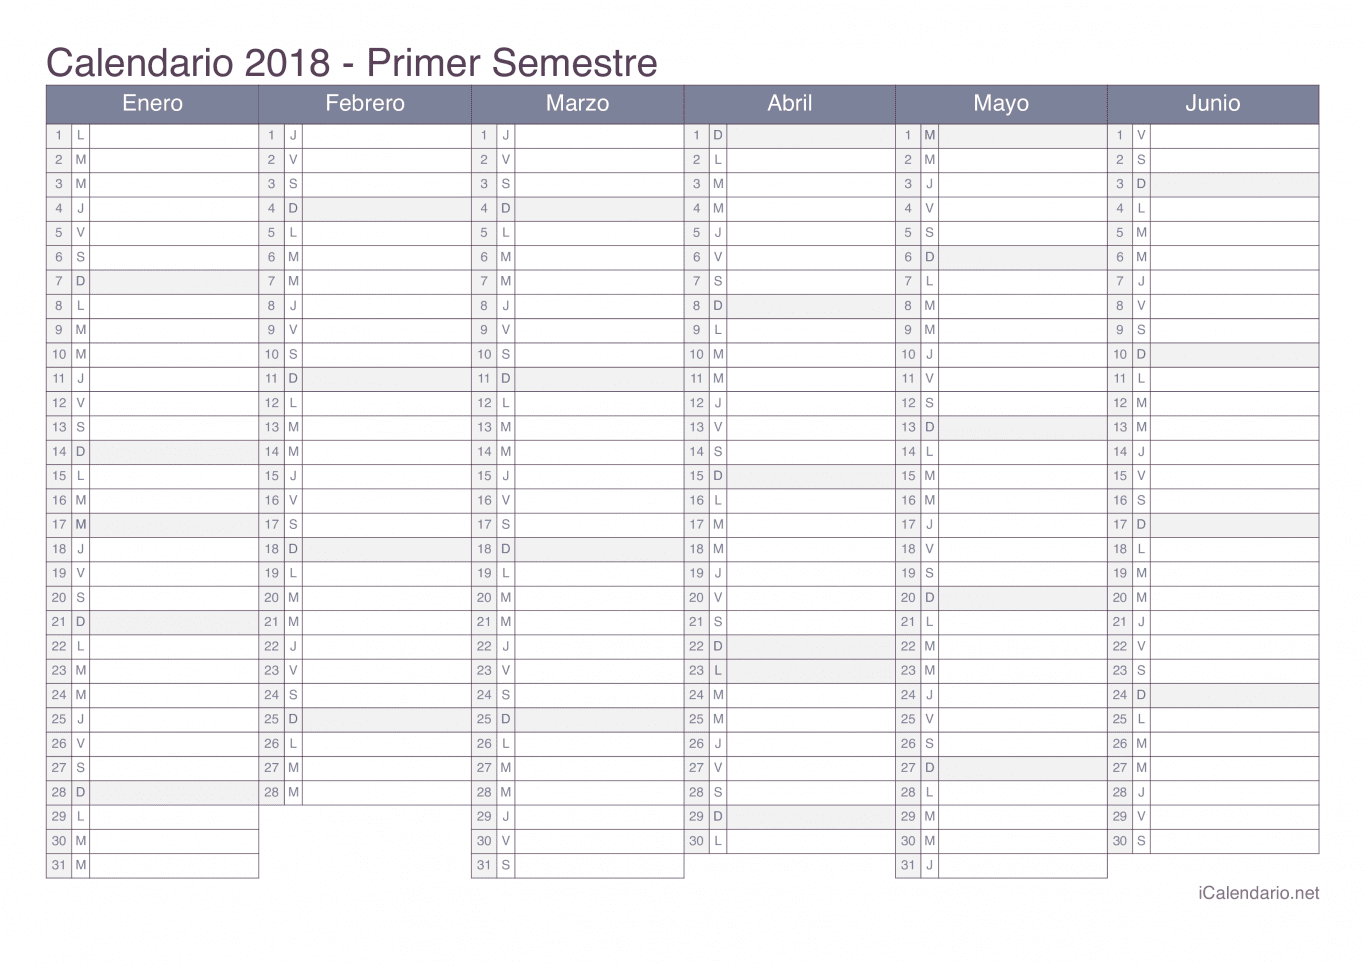 Calendario por semestre 2018 - Office